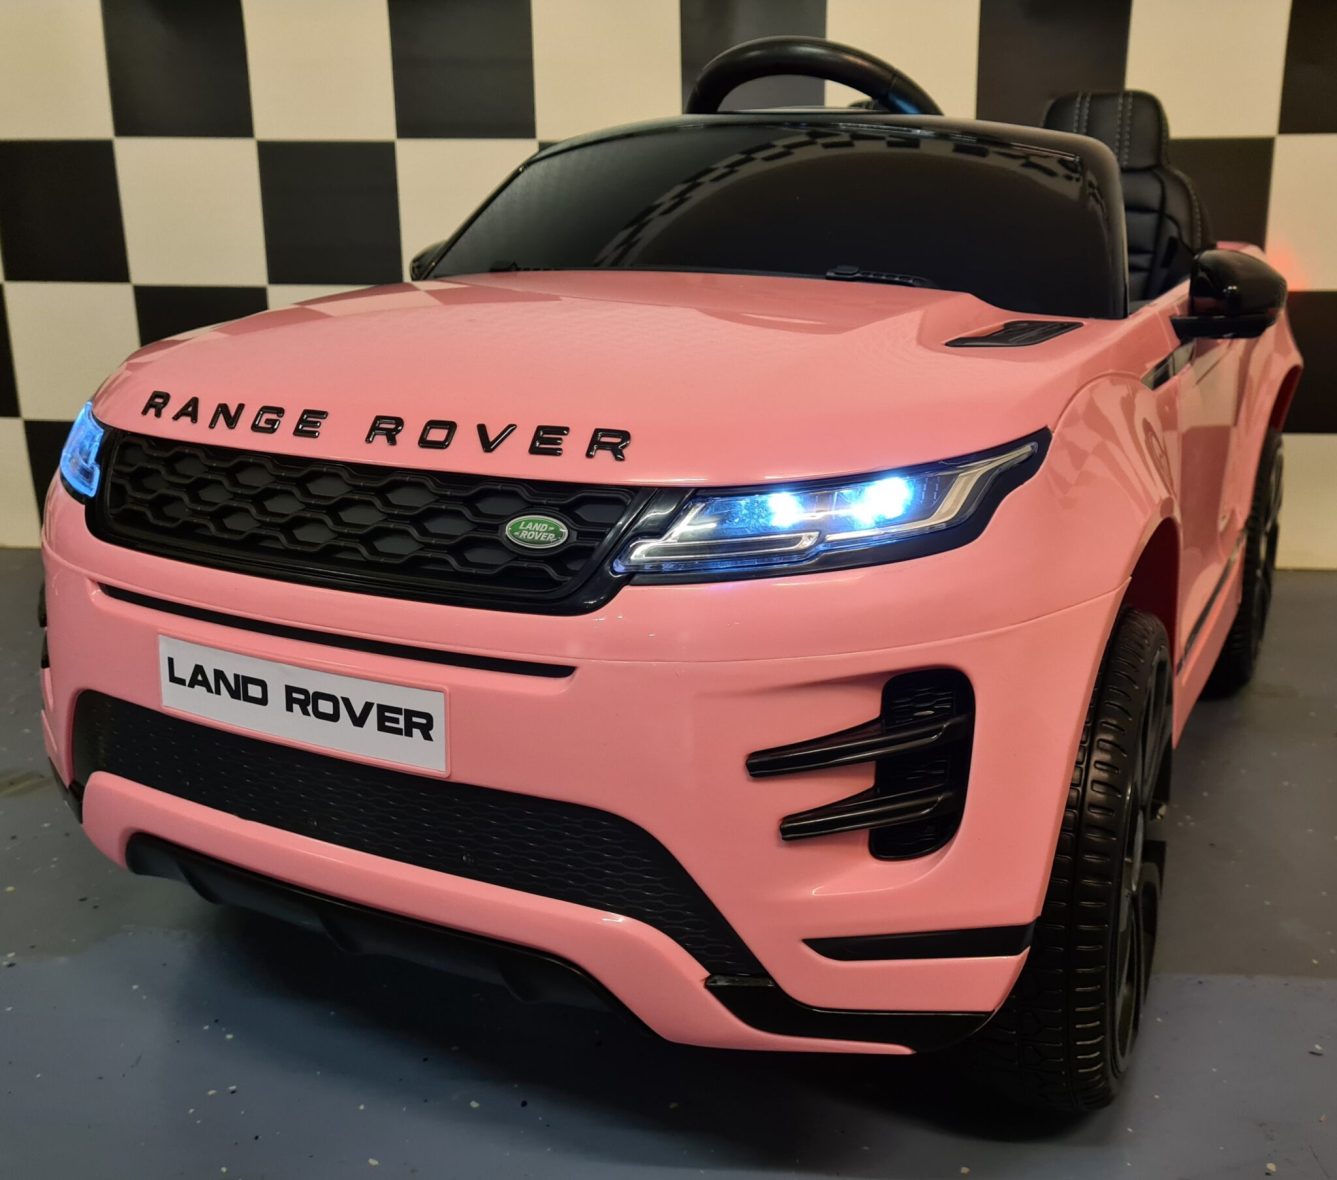 Children’s Car Range Rover Evoque Pink 4×4 12 Volts